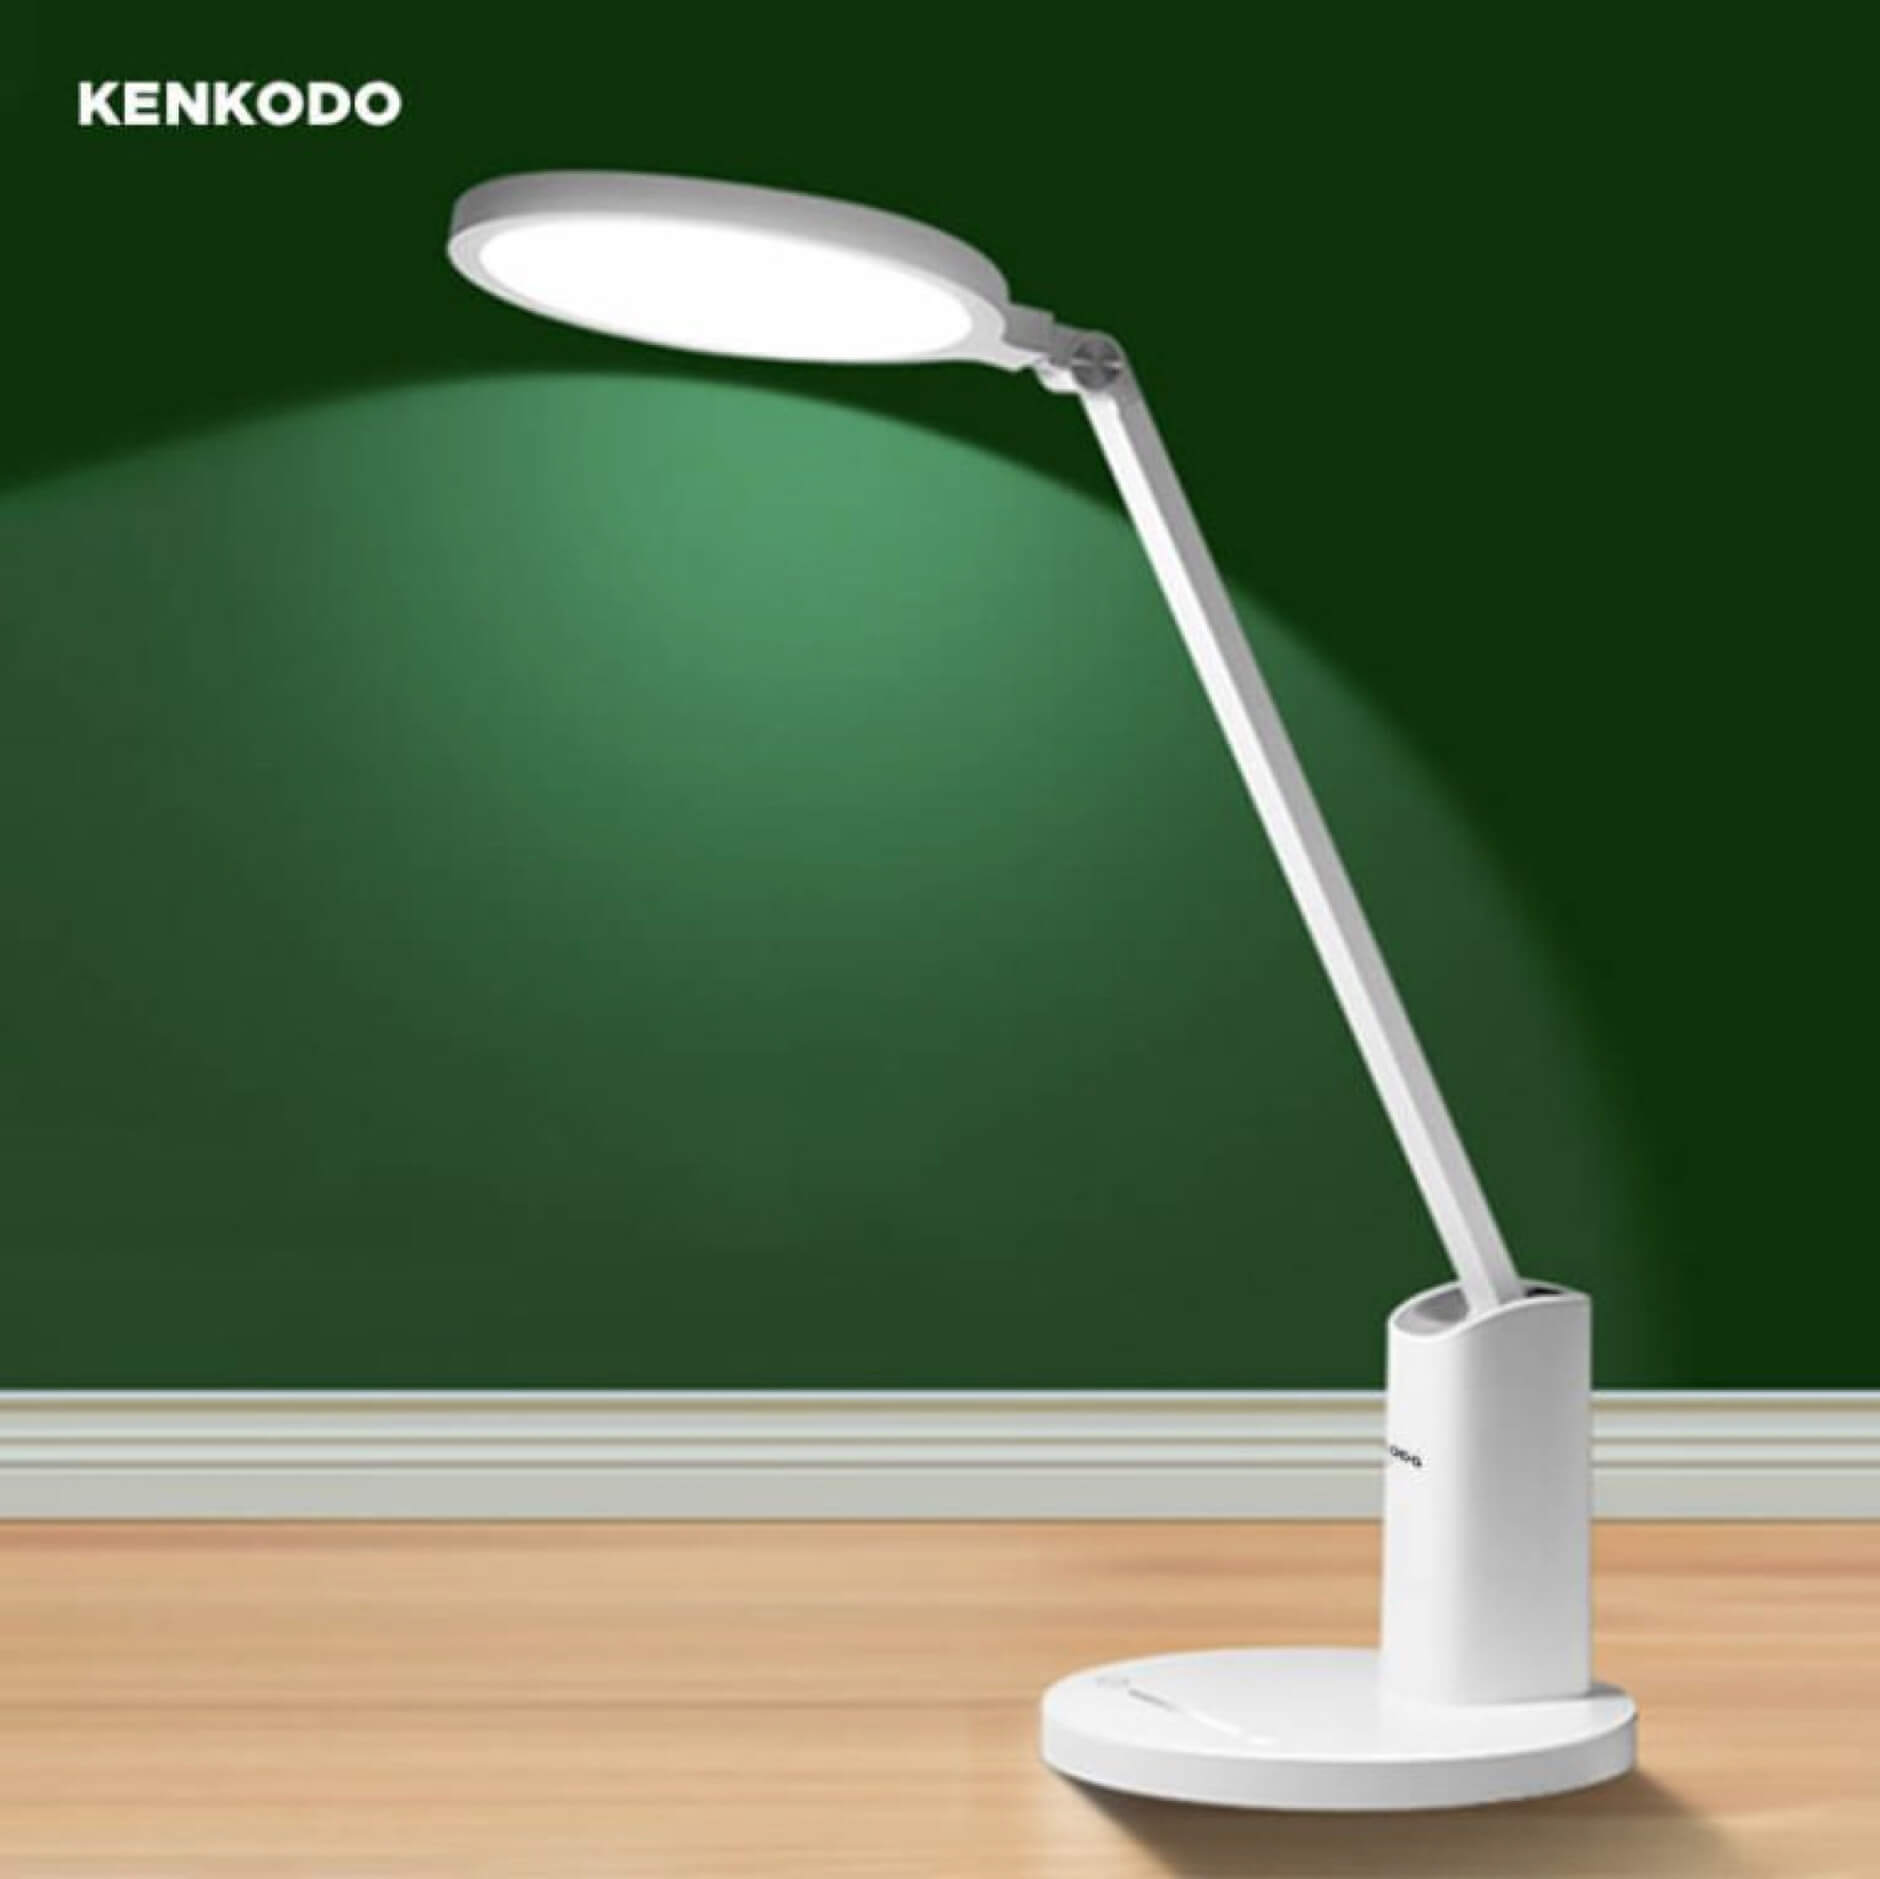 Đèn học chống cận Kenkodo đảm bảo an toàn cho mắt